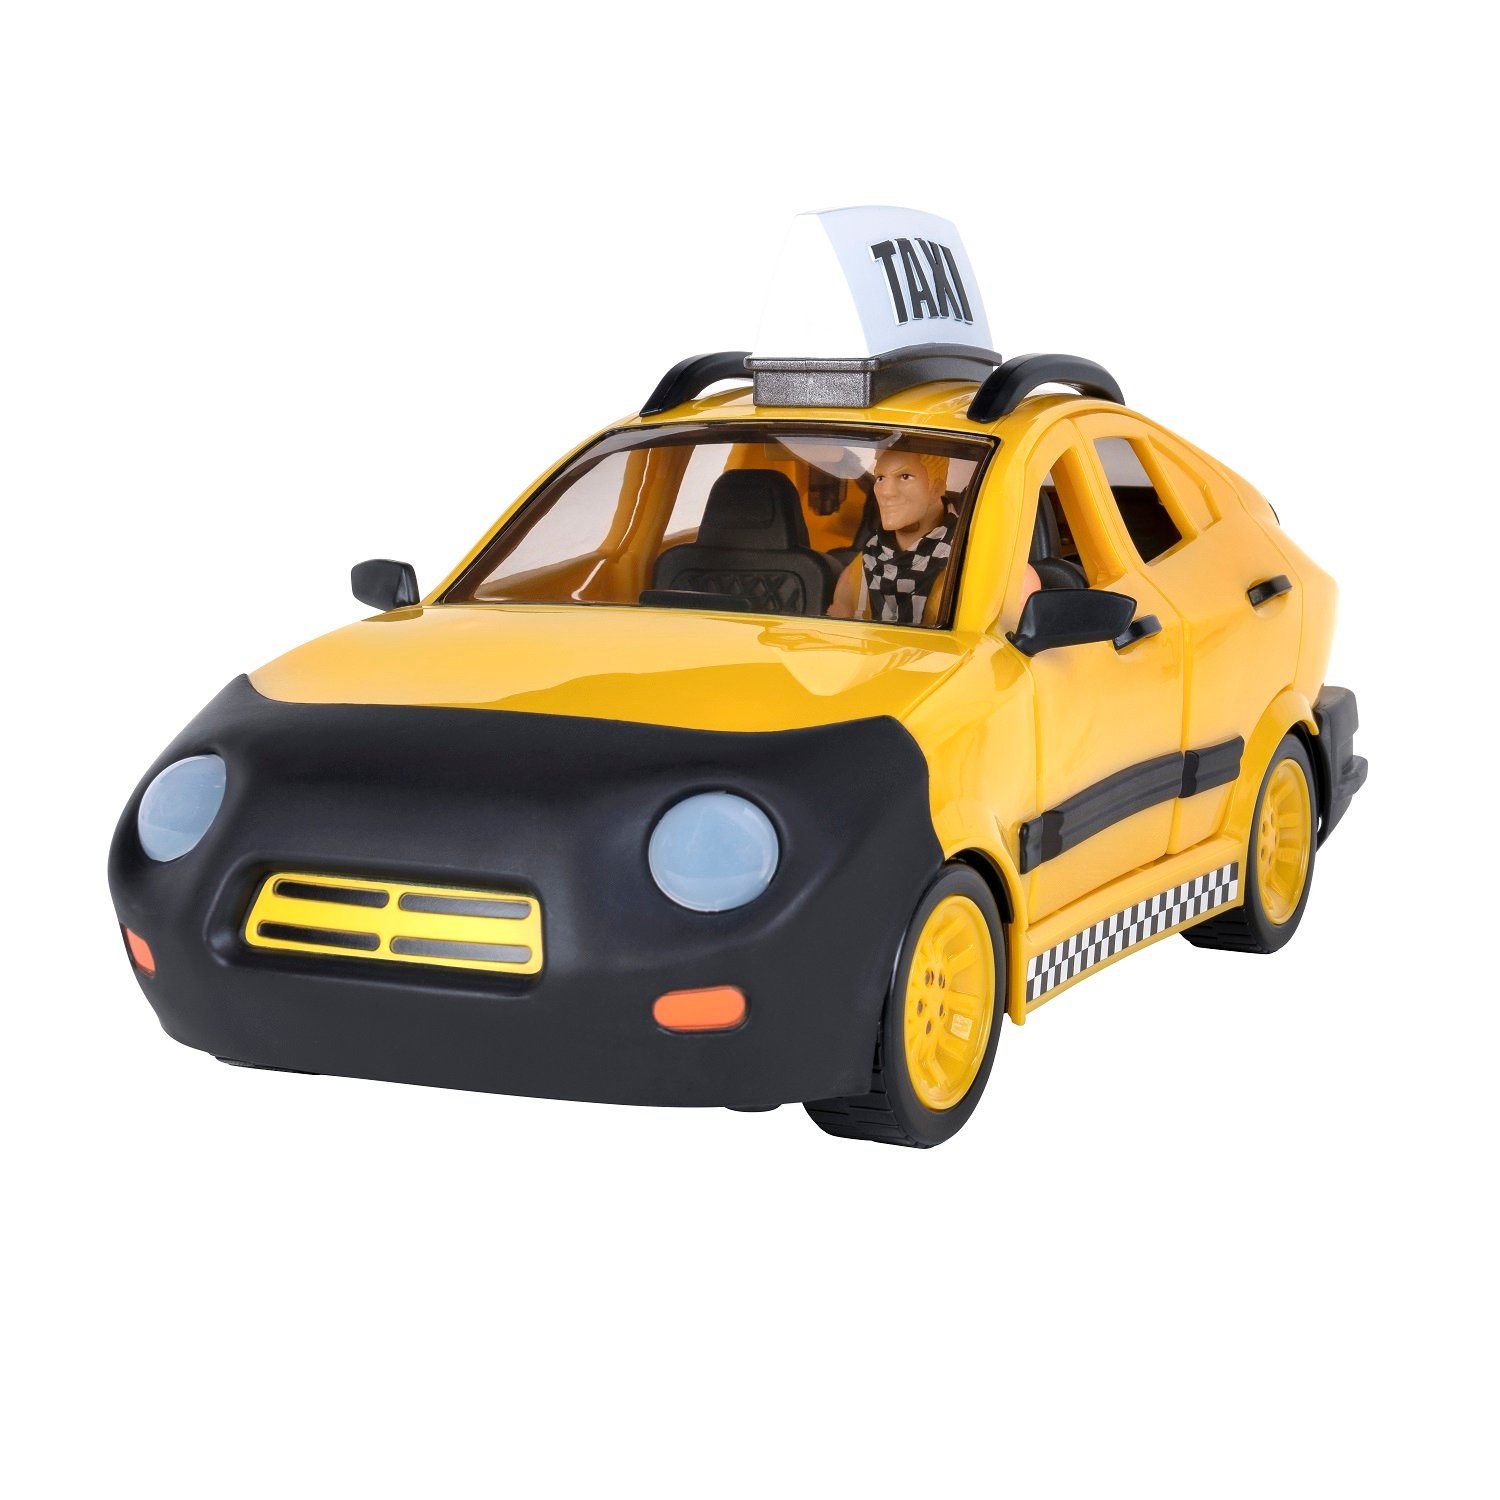 Ігровий набір Jazwares Fortnite Joy Ride Vehicle Taxi Cab, автомобіль і фігурка (FNT0817) - фото 10